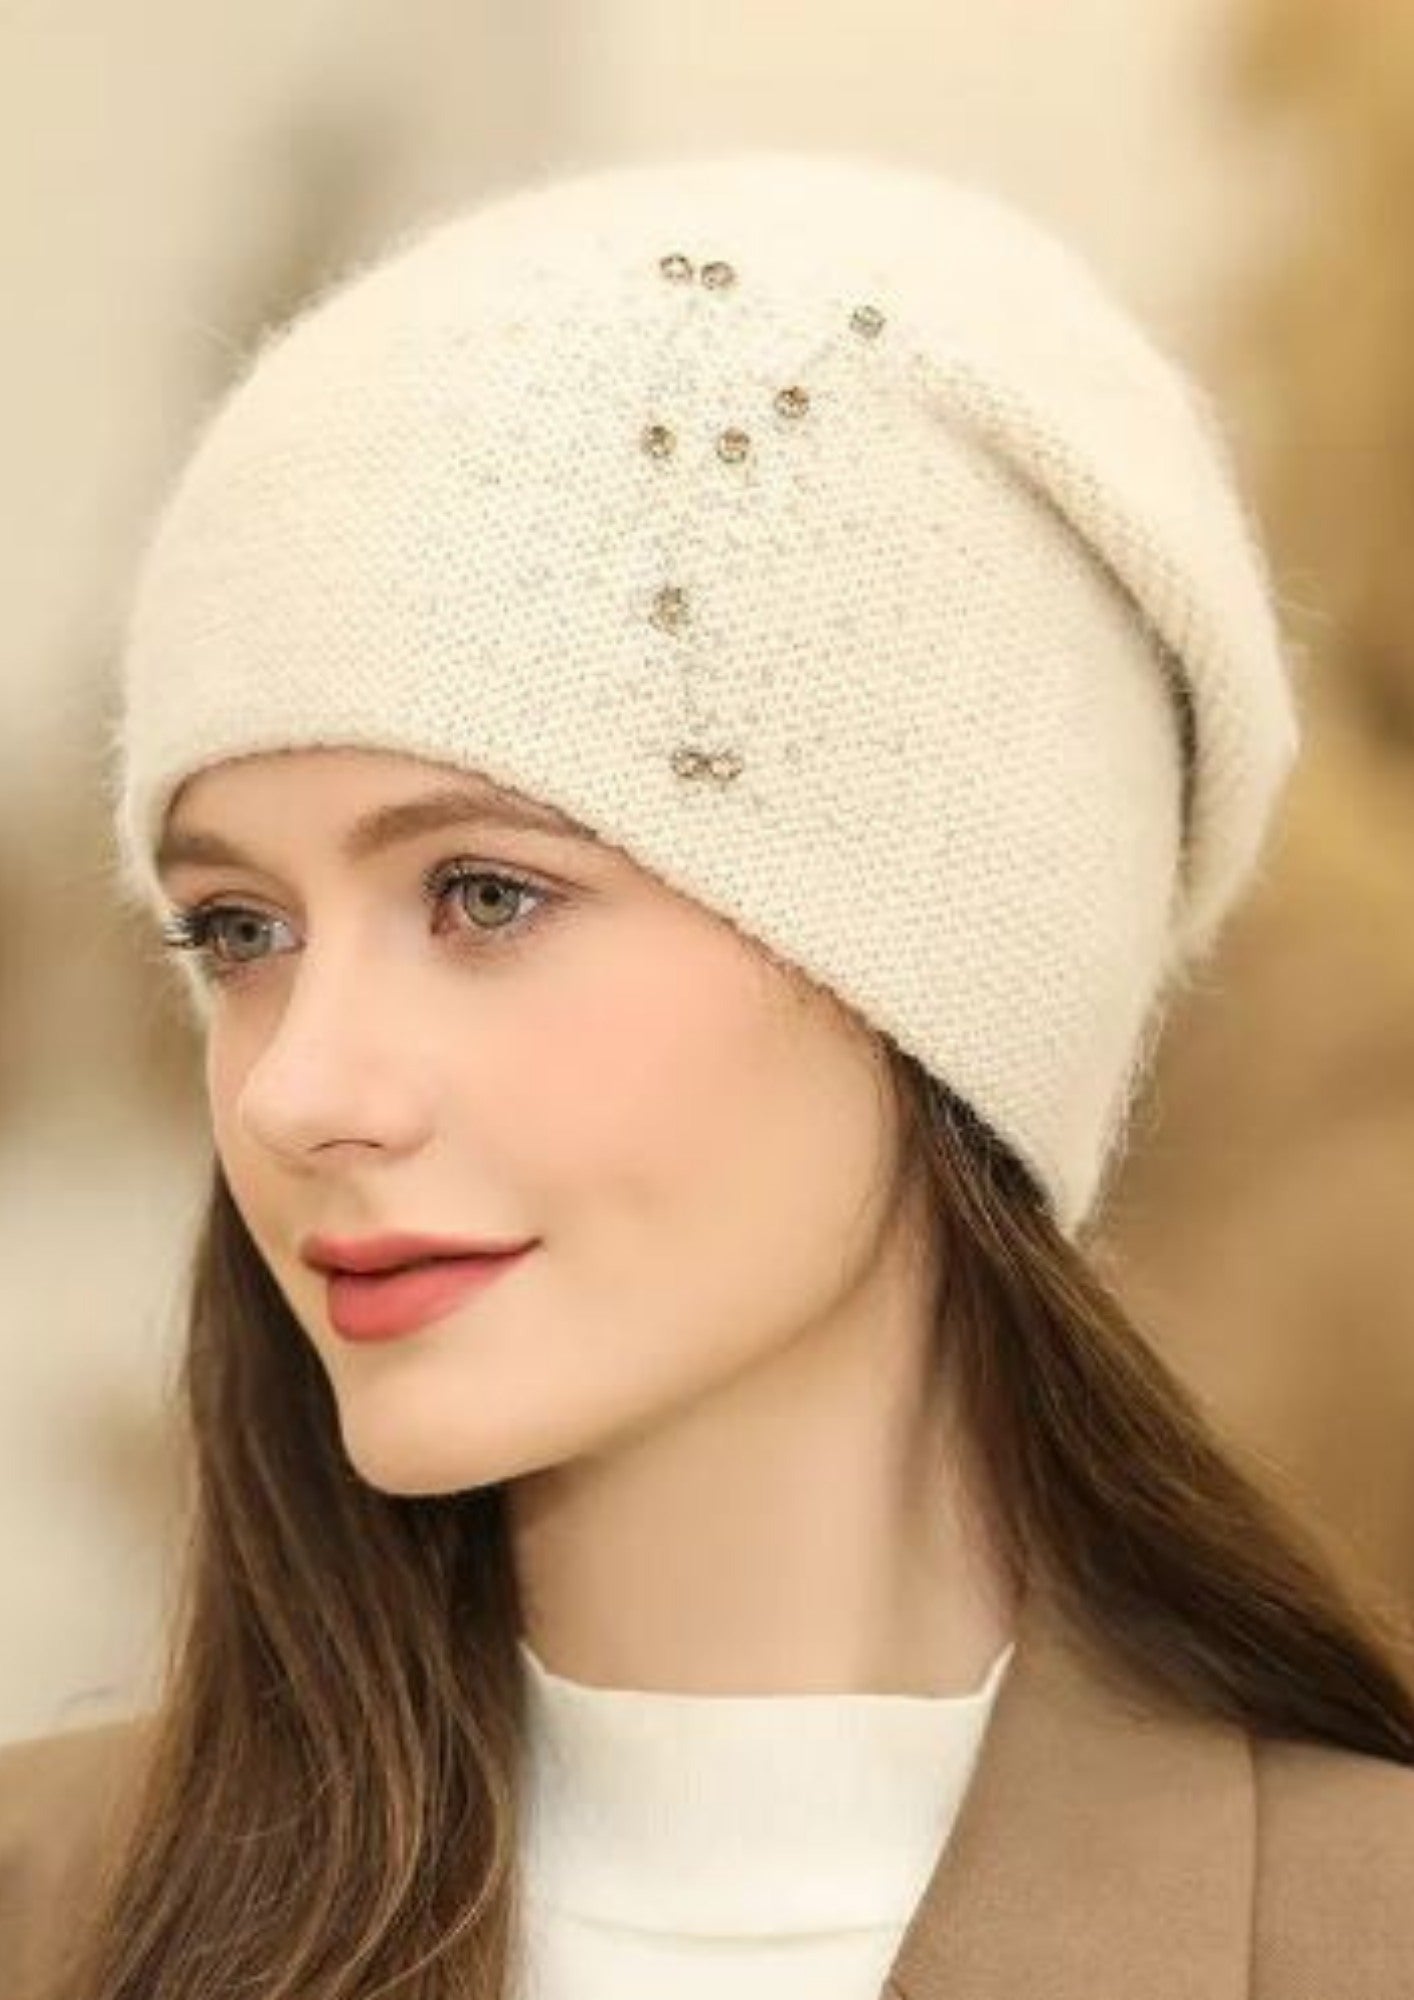 Casquette,béret thermique pour femme,bonnet en tricot,chaud,perle